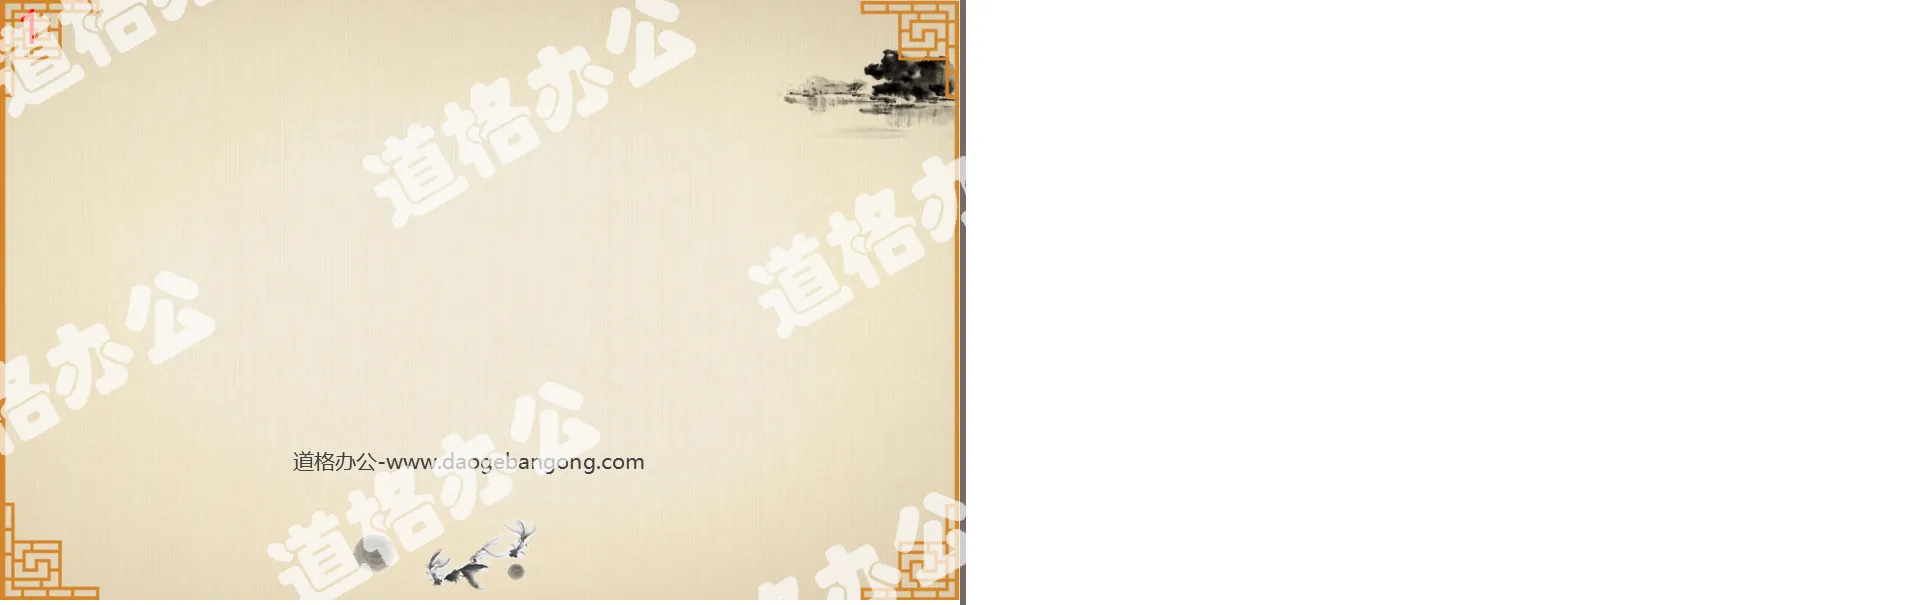 带边框装饰的中国风古典PPT背景图片下载